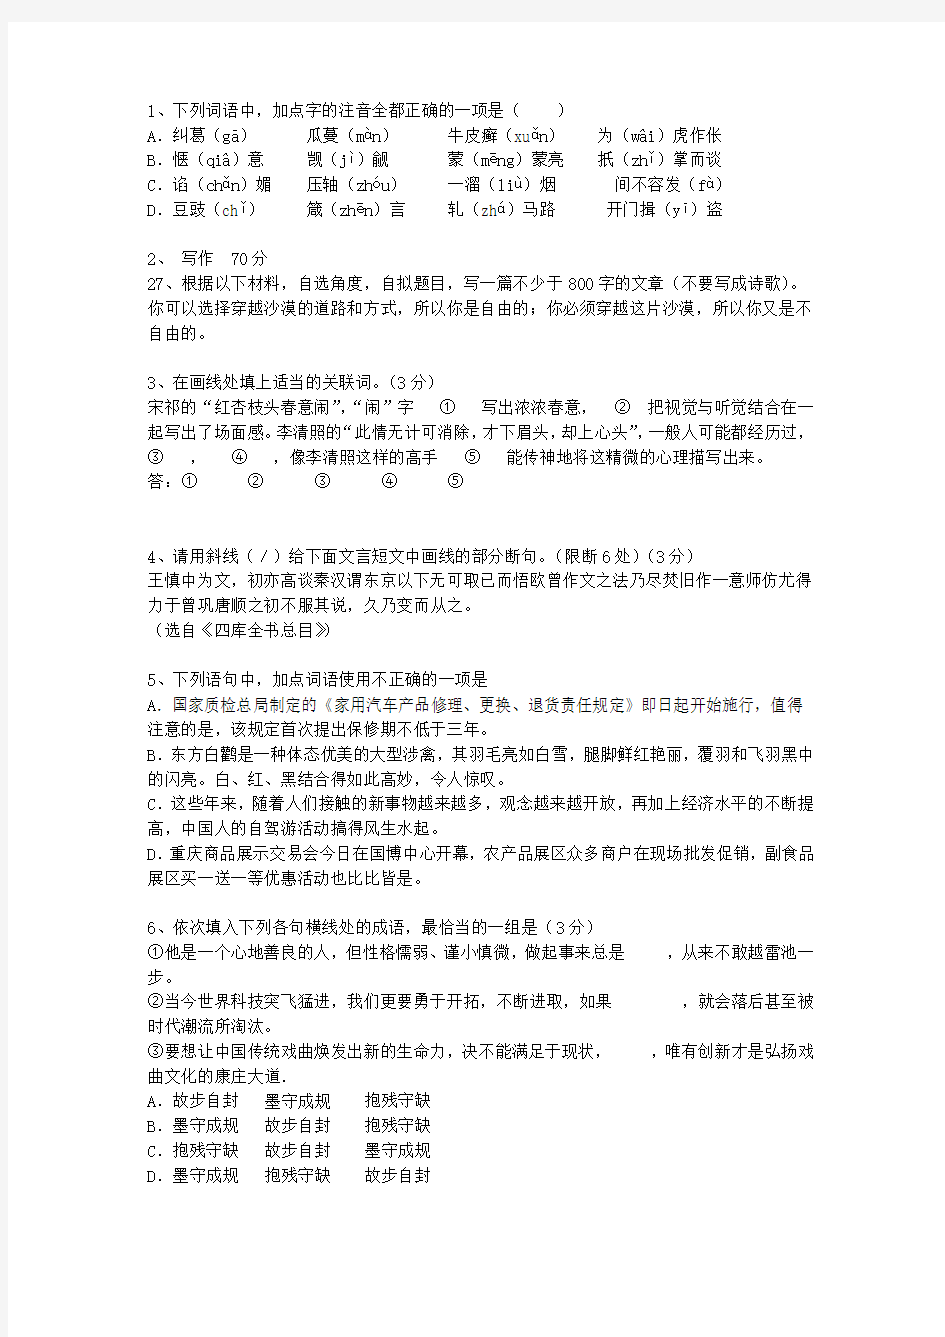 2014辽宁省高考语文试卷及参考答案理论考试试题及答案